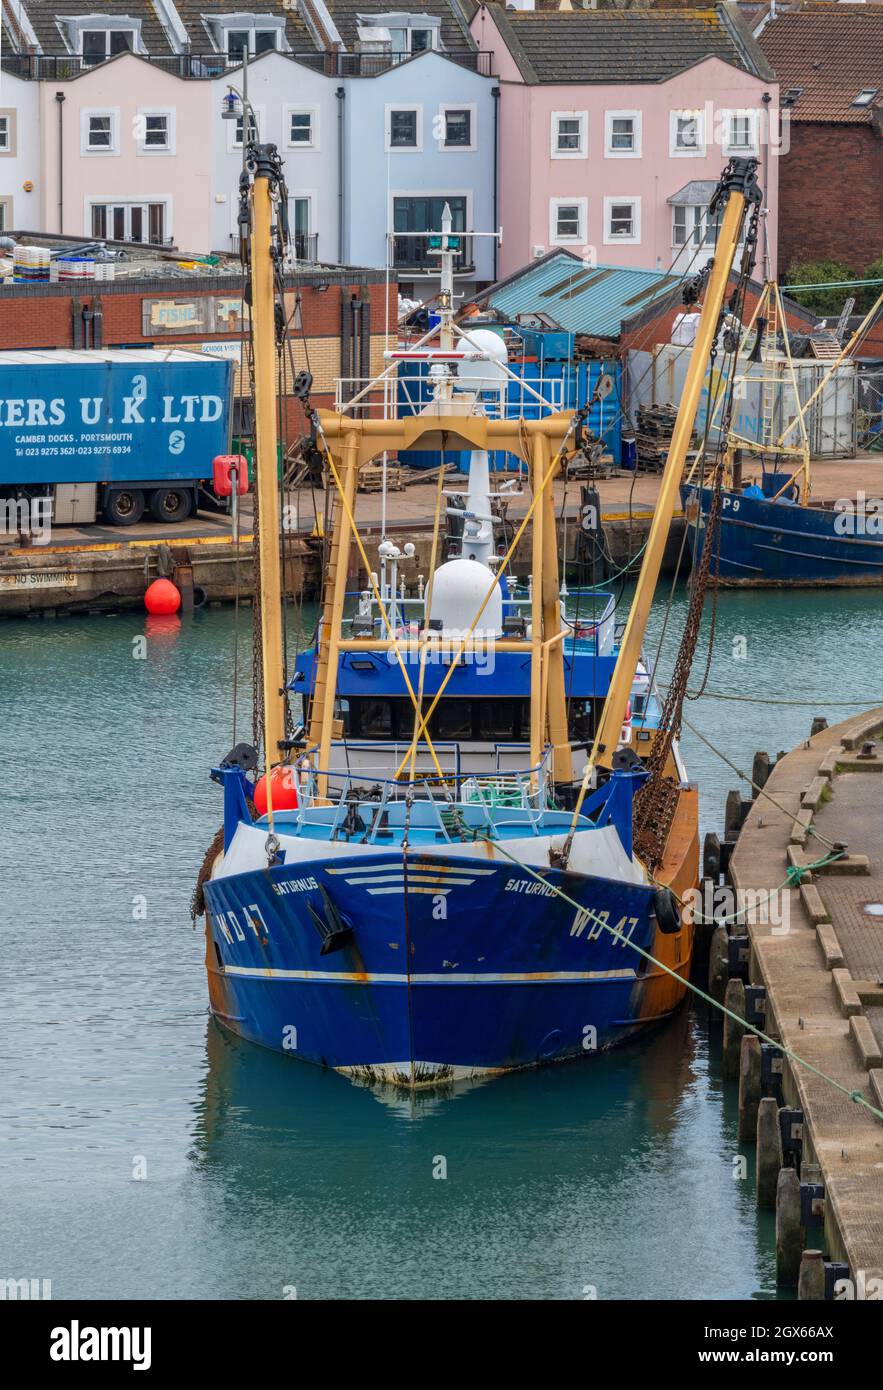 Tiefsee-Küstenfischerei Trawler im Hafen von portsmouth hampshire solent uk. trawler im Hafen in portsmouth Docks oder Hafen. Stockfoto